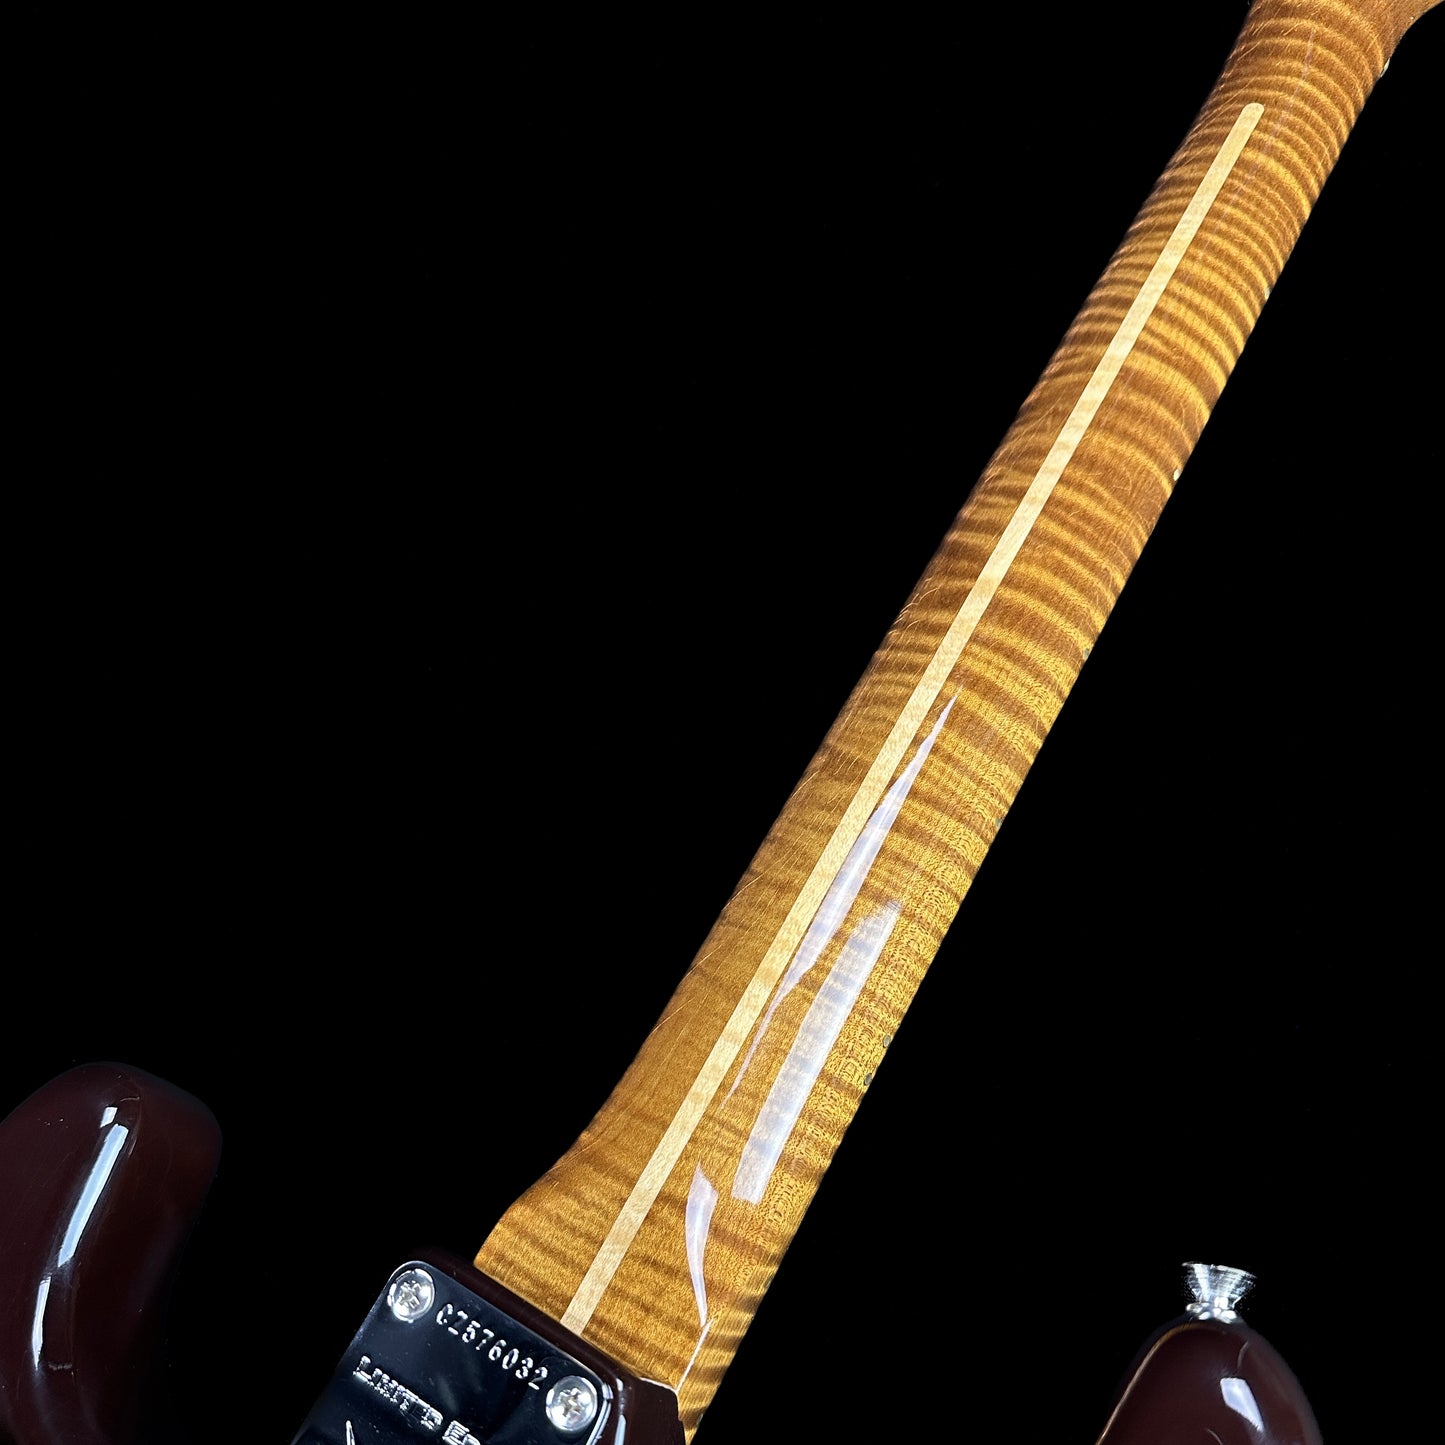 Back of neck of Fender Custom Shop Limited Edition Roasted Pine Chocolate 2 Tone Sunburst.